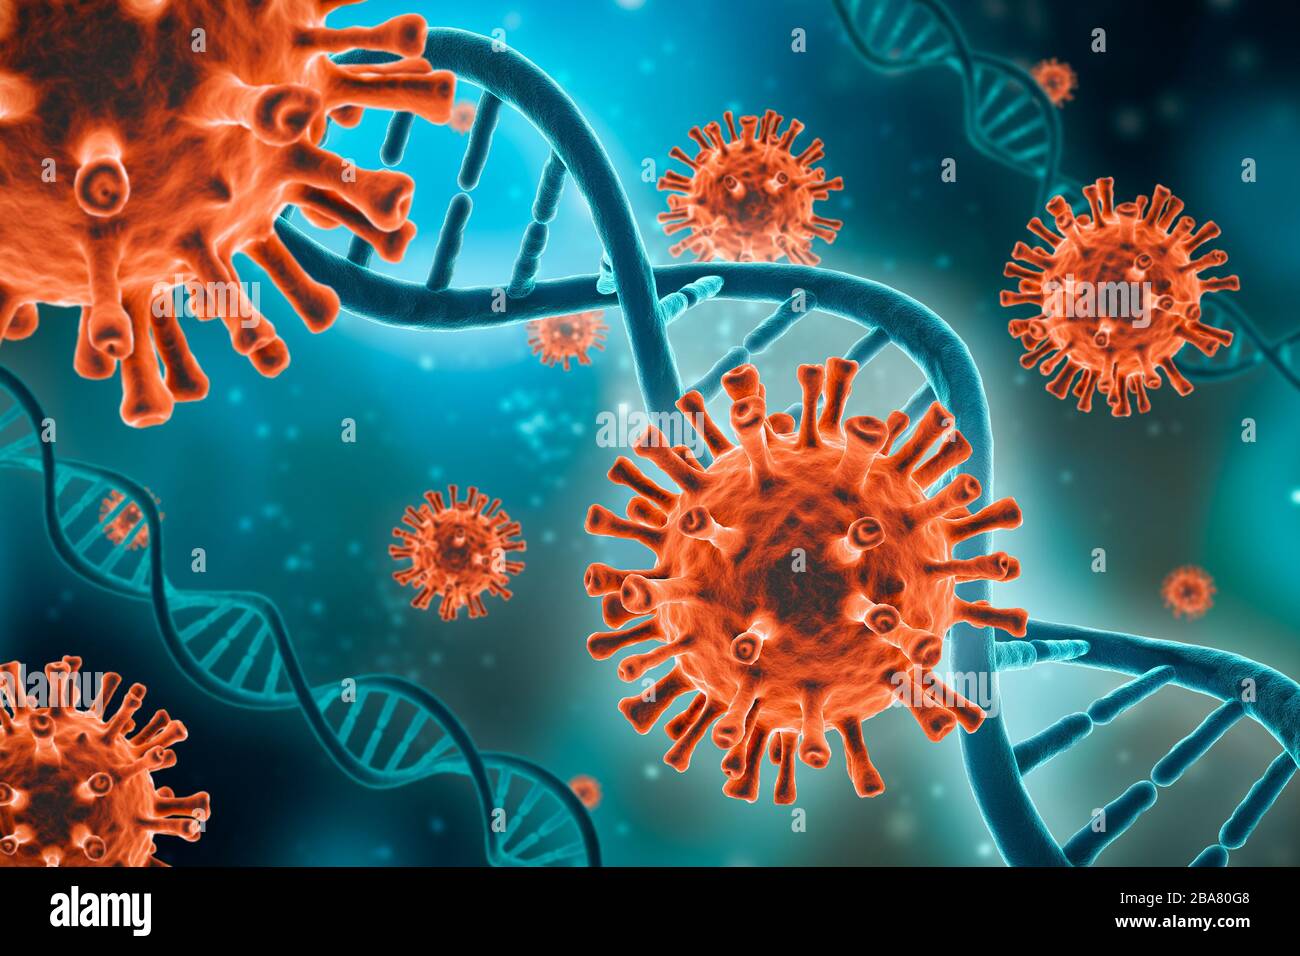 Mikroskopisch kleine rote Viruszellen und DNA-Stränge auf blaugrünem Hintergrund 3D-Darstellung. Mikrobiologie, Virologie, Medizin, Epidemiologie, Biol Stockfoto